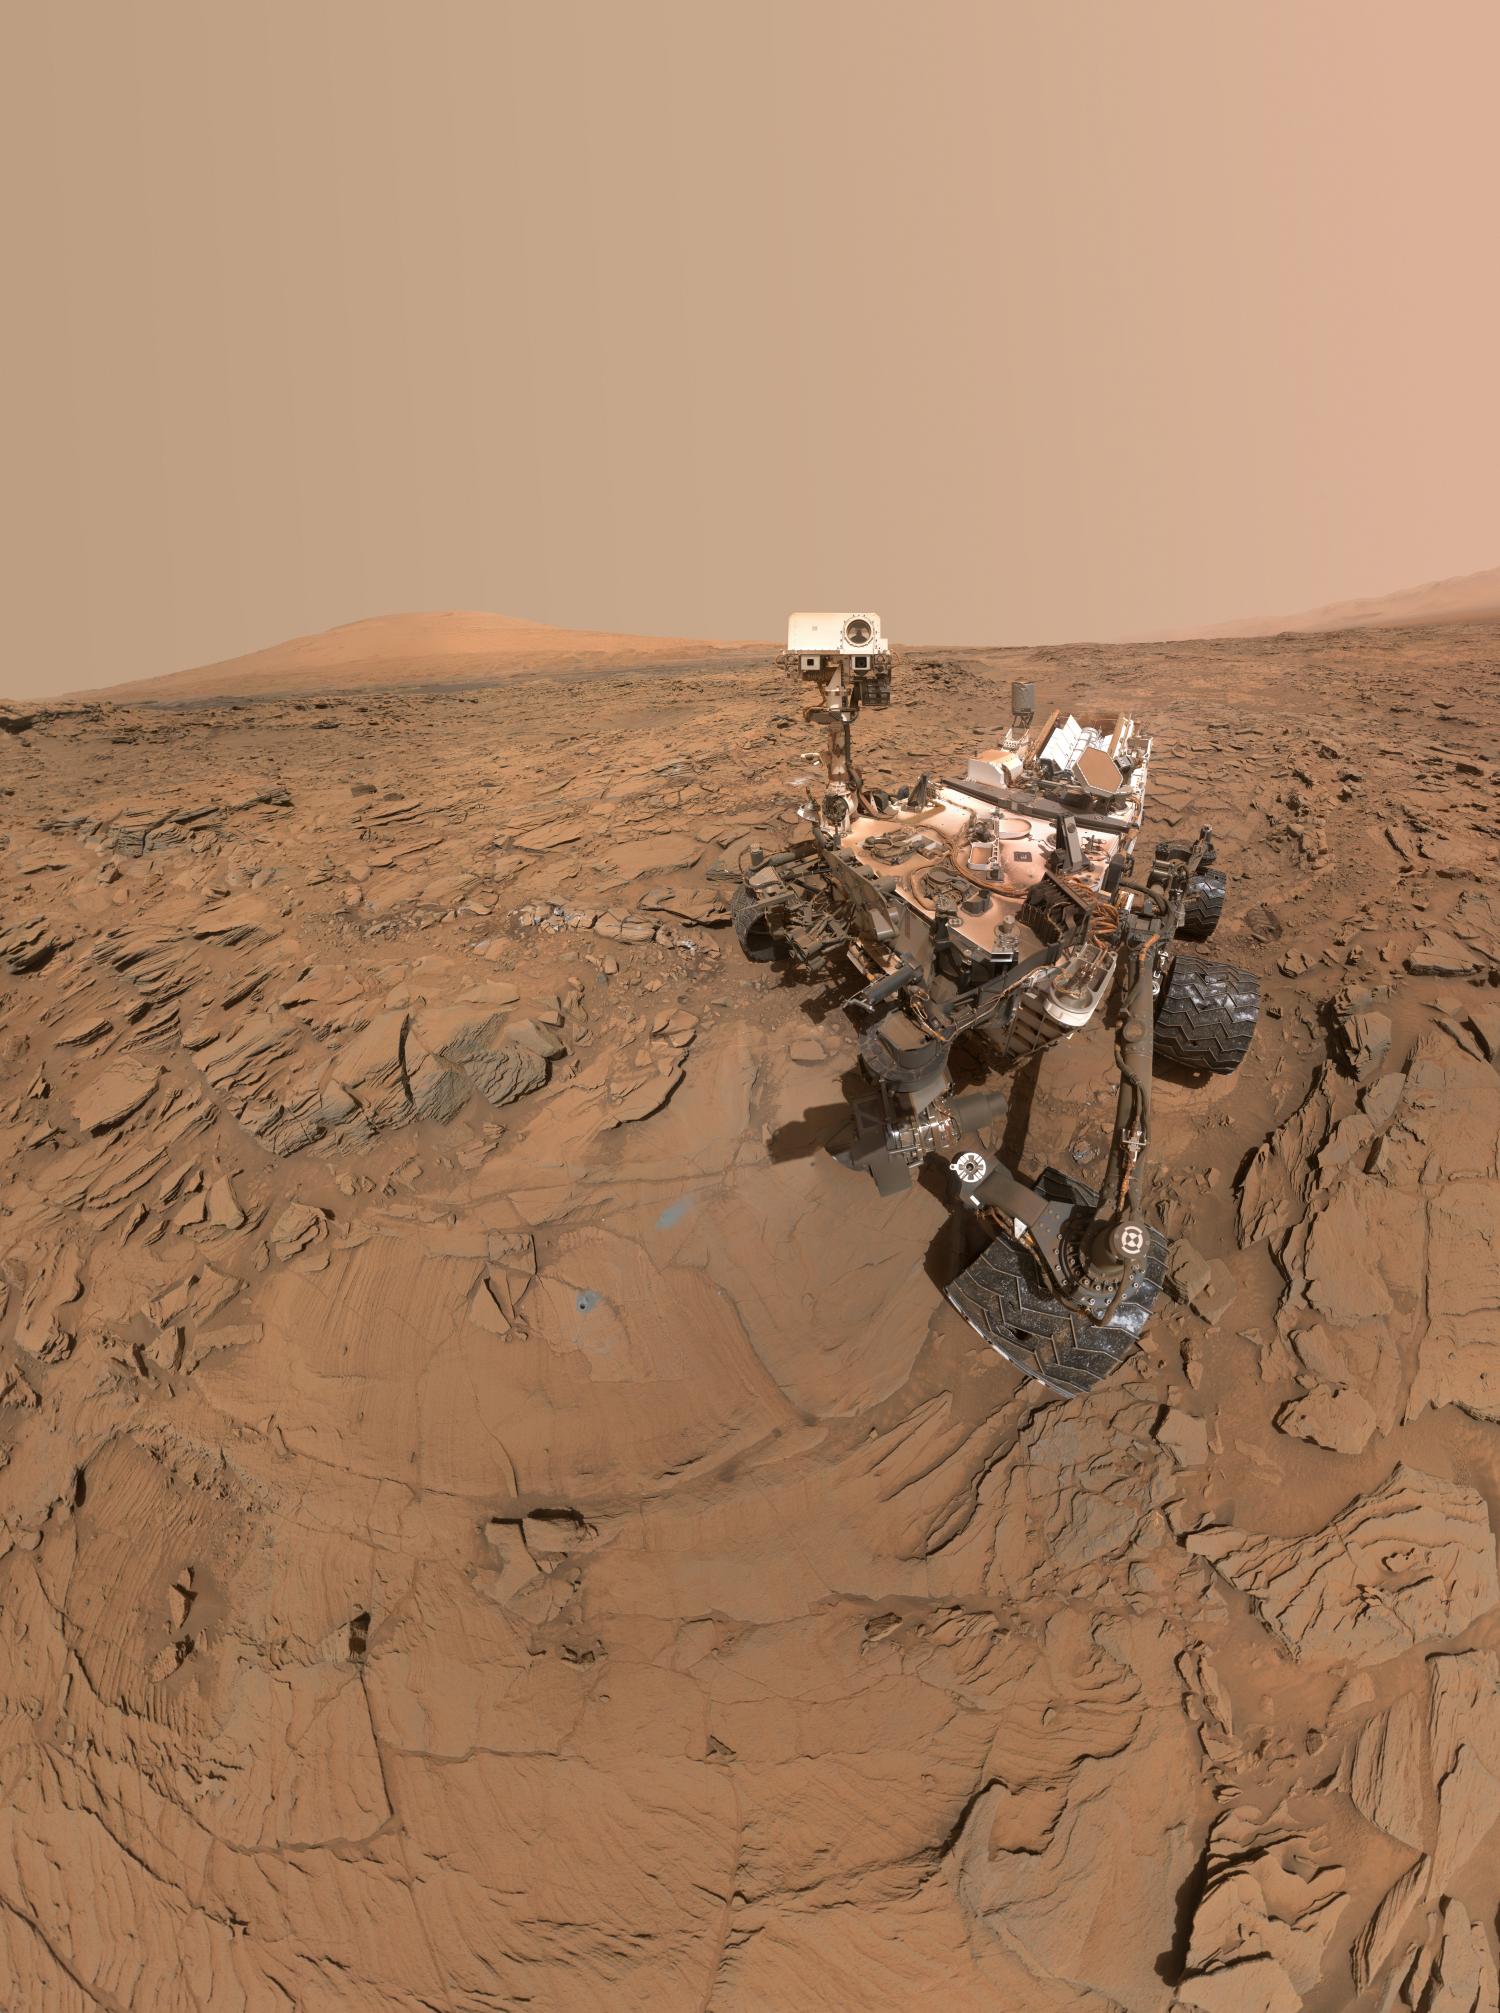 Curiosity rover enters precautionary safe mode